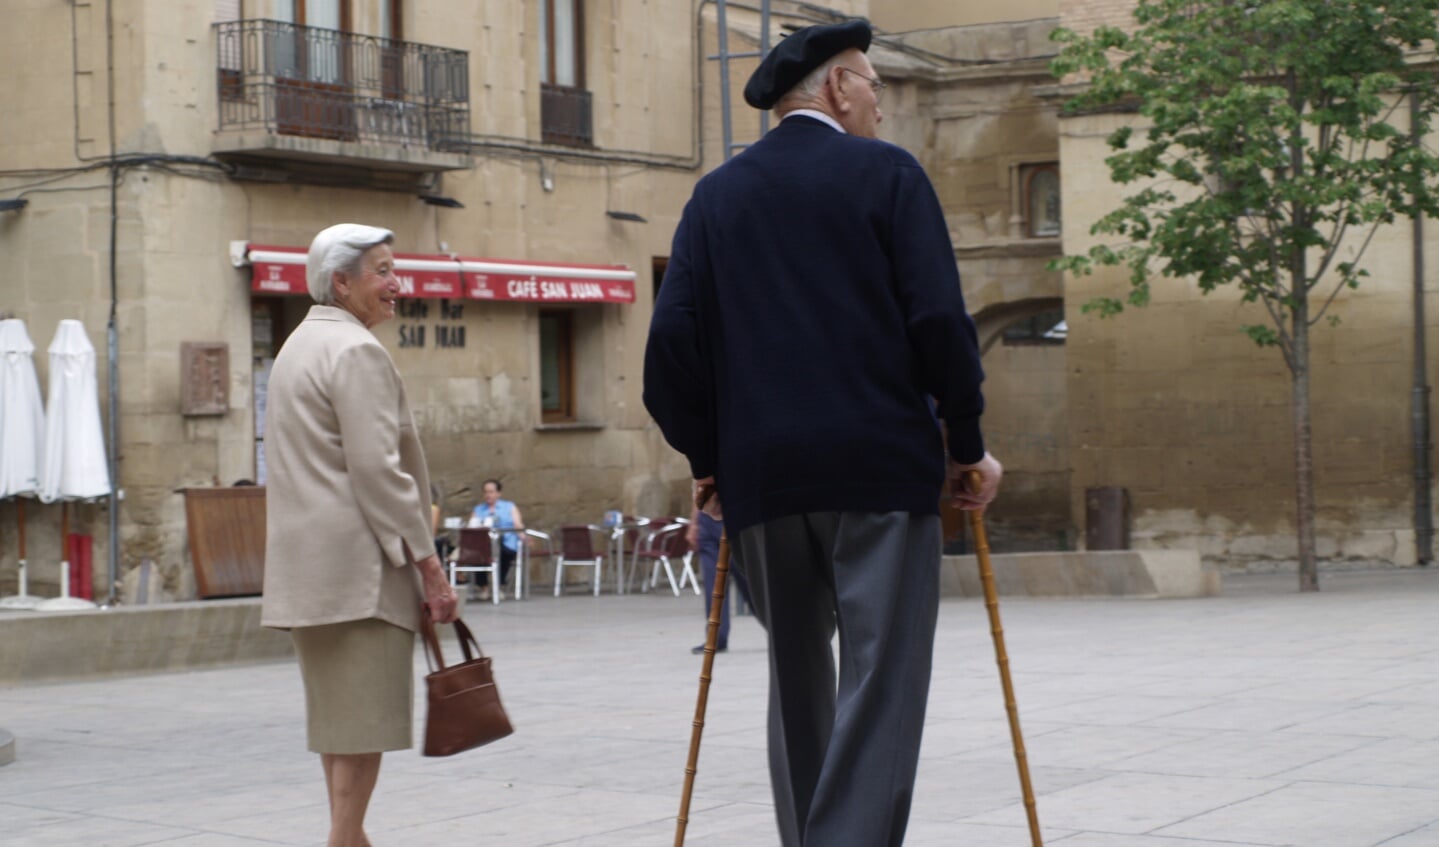 Onderweg in Spanje maakte ik deze foto van Juan dos Stokkos, uitvinder van Nordic walking. Henk van Schijndel